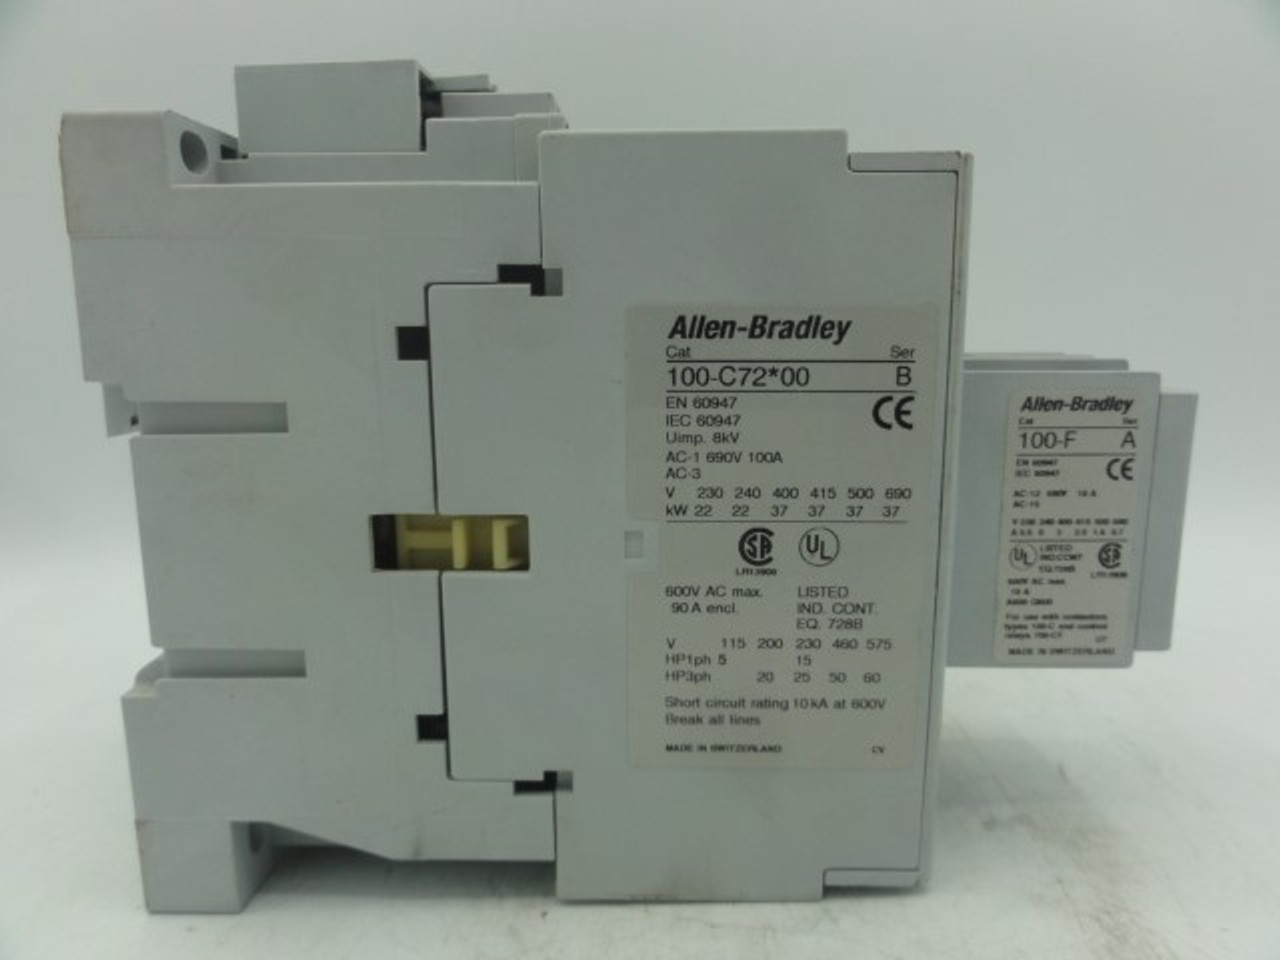 Allen Bradley 100-C72*00 Contactor Relay w/ Allen Bradley 100-F